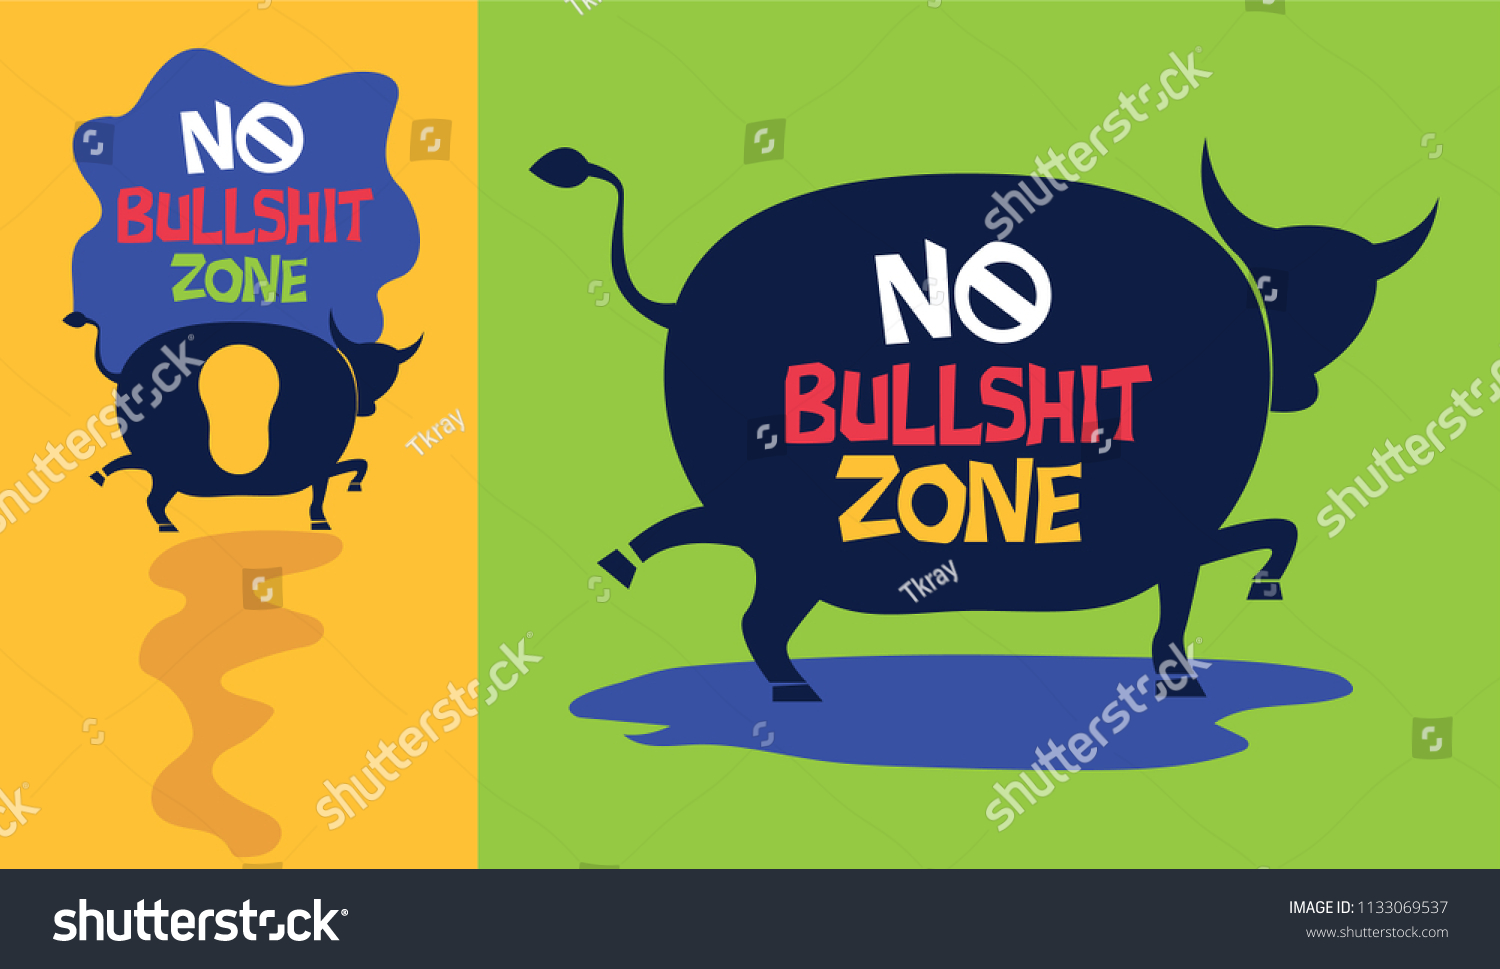 No bullshit zone creative